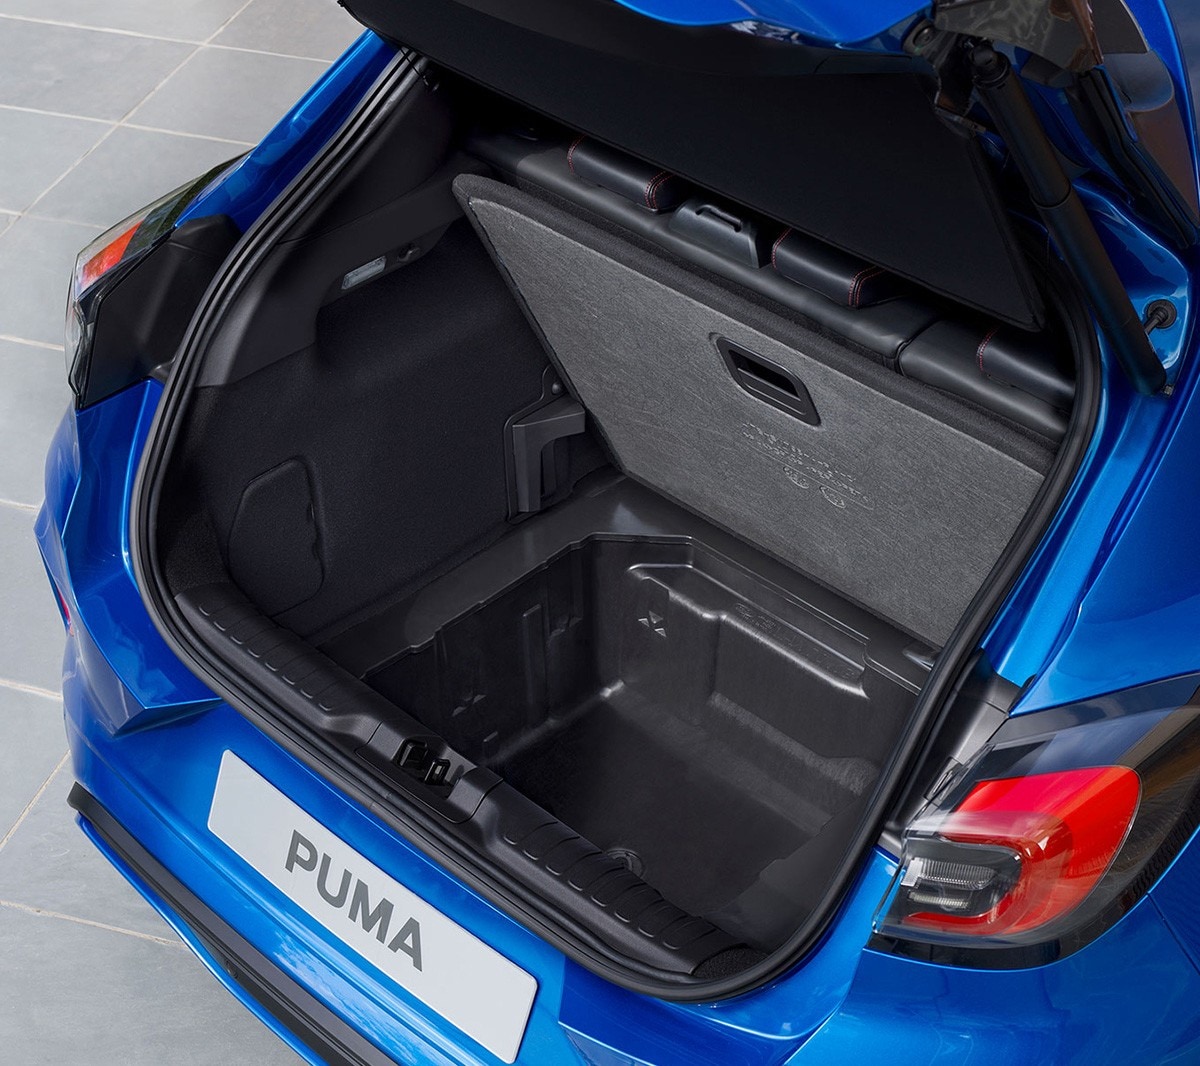 Ford Puma in Blau. Heckansicht, Blick auf geöffneten Gepäckraum und Ford MegaBox